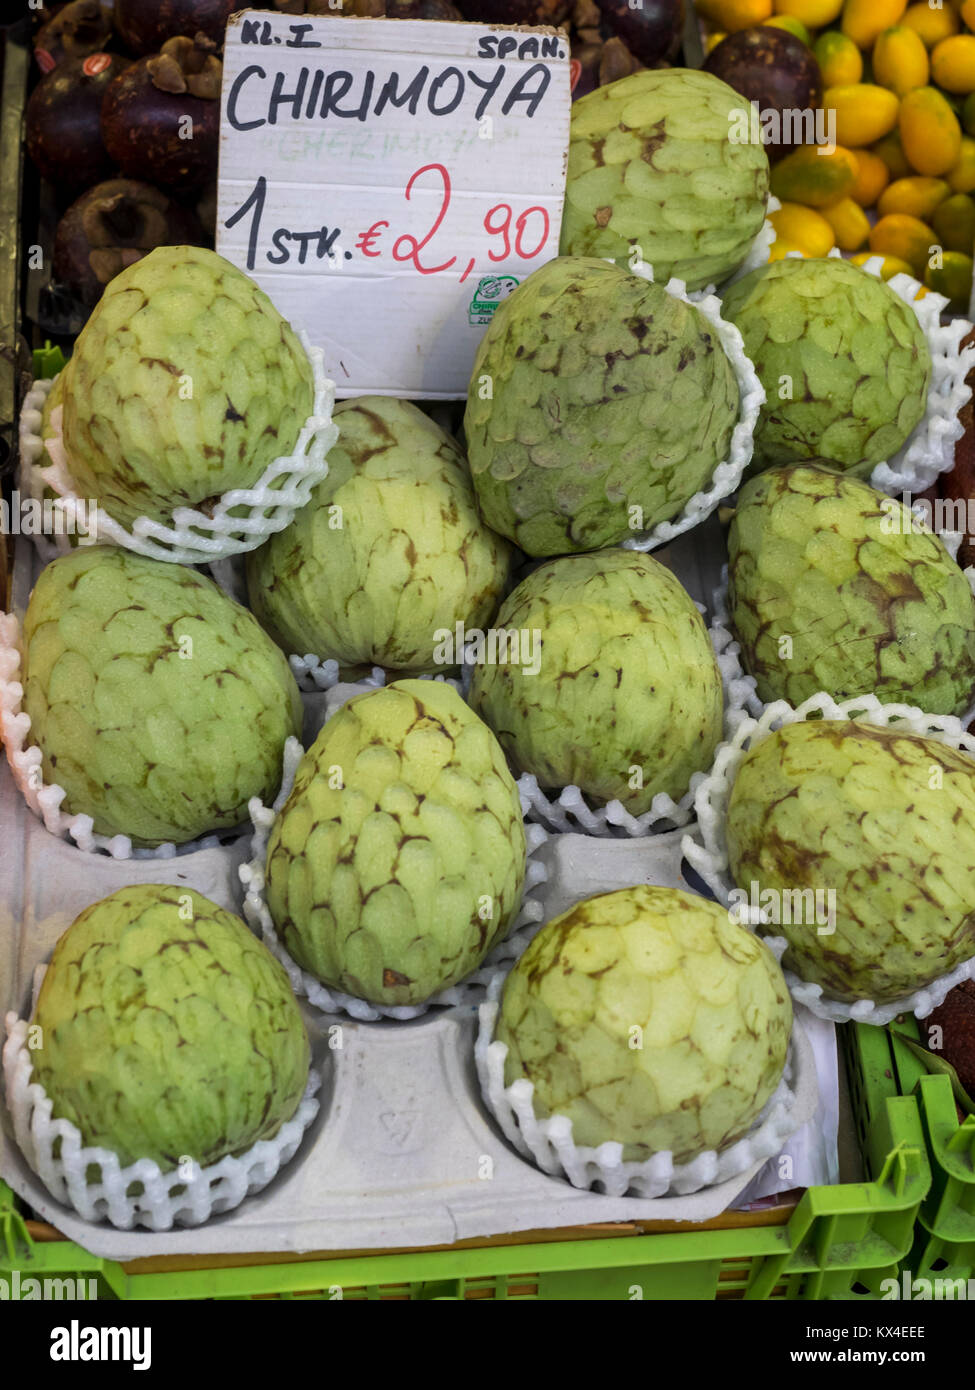 VIENNE, AUTRICHE - 04 DÉCEMBRE 2017 : fruits sud-américains Cherimoya (Chirimoya) en vente sur le marché Naschmarkt Banque D'Images